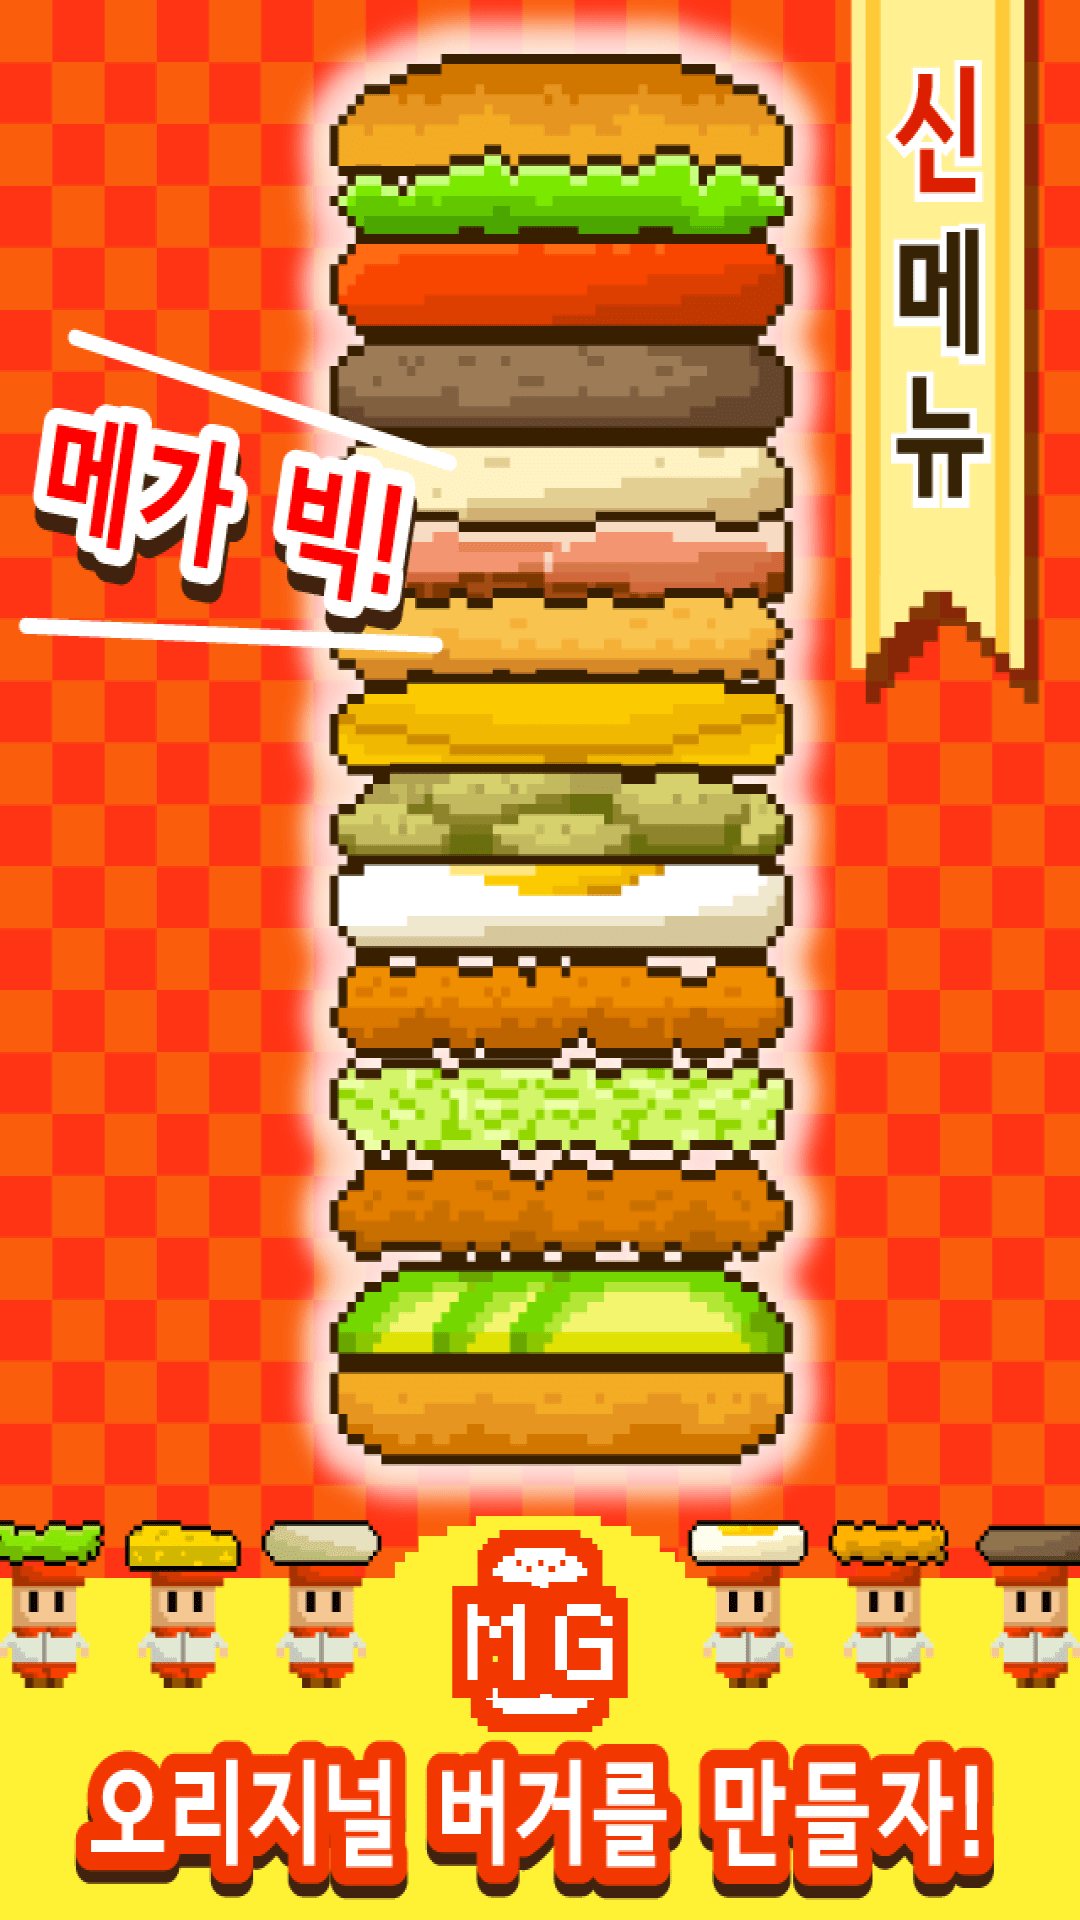 巨型汉堡包游戏1